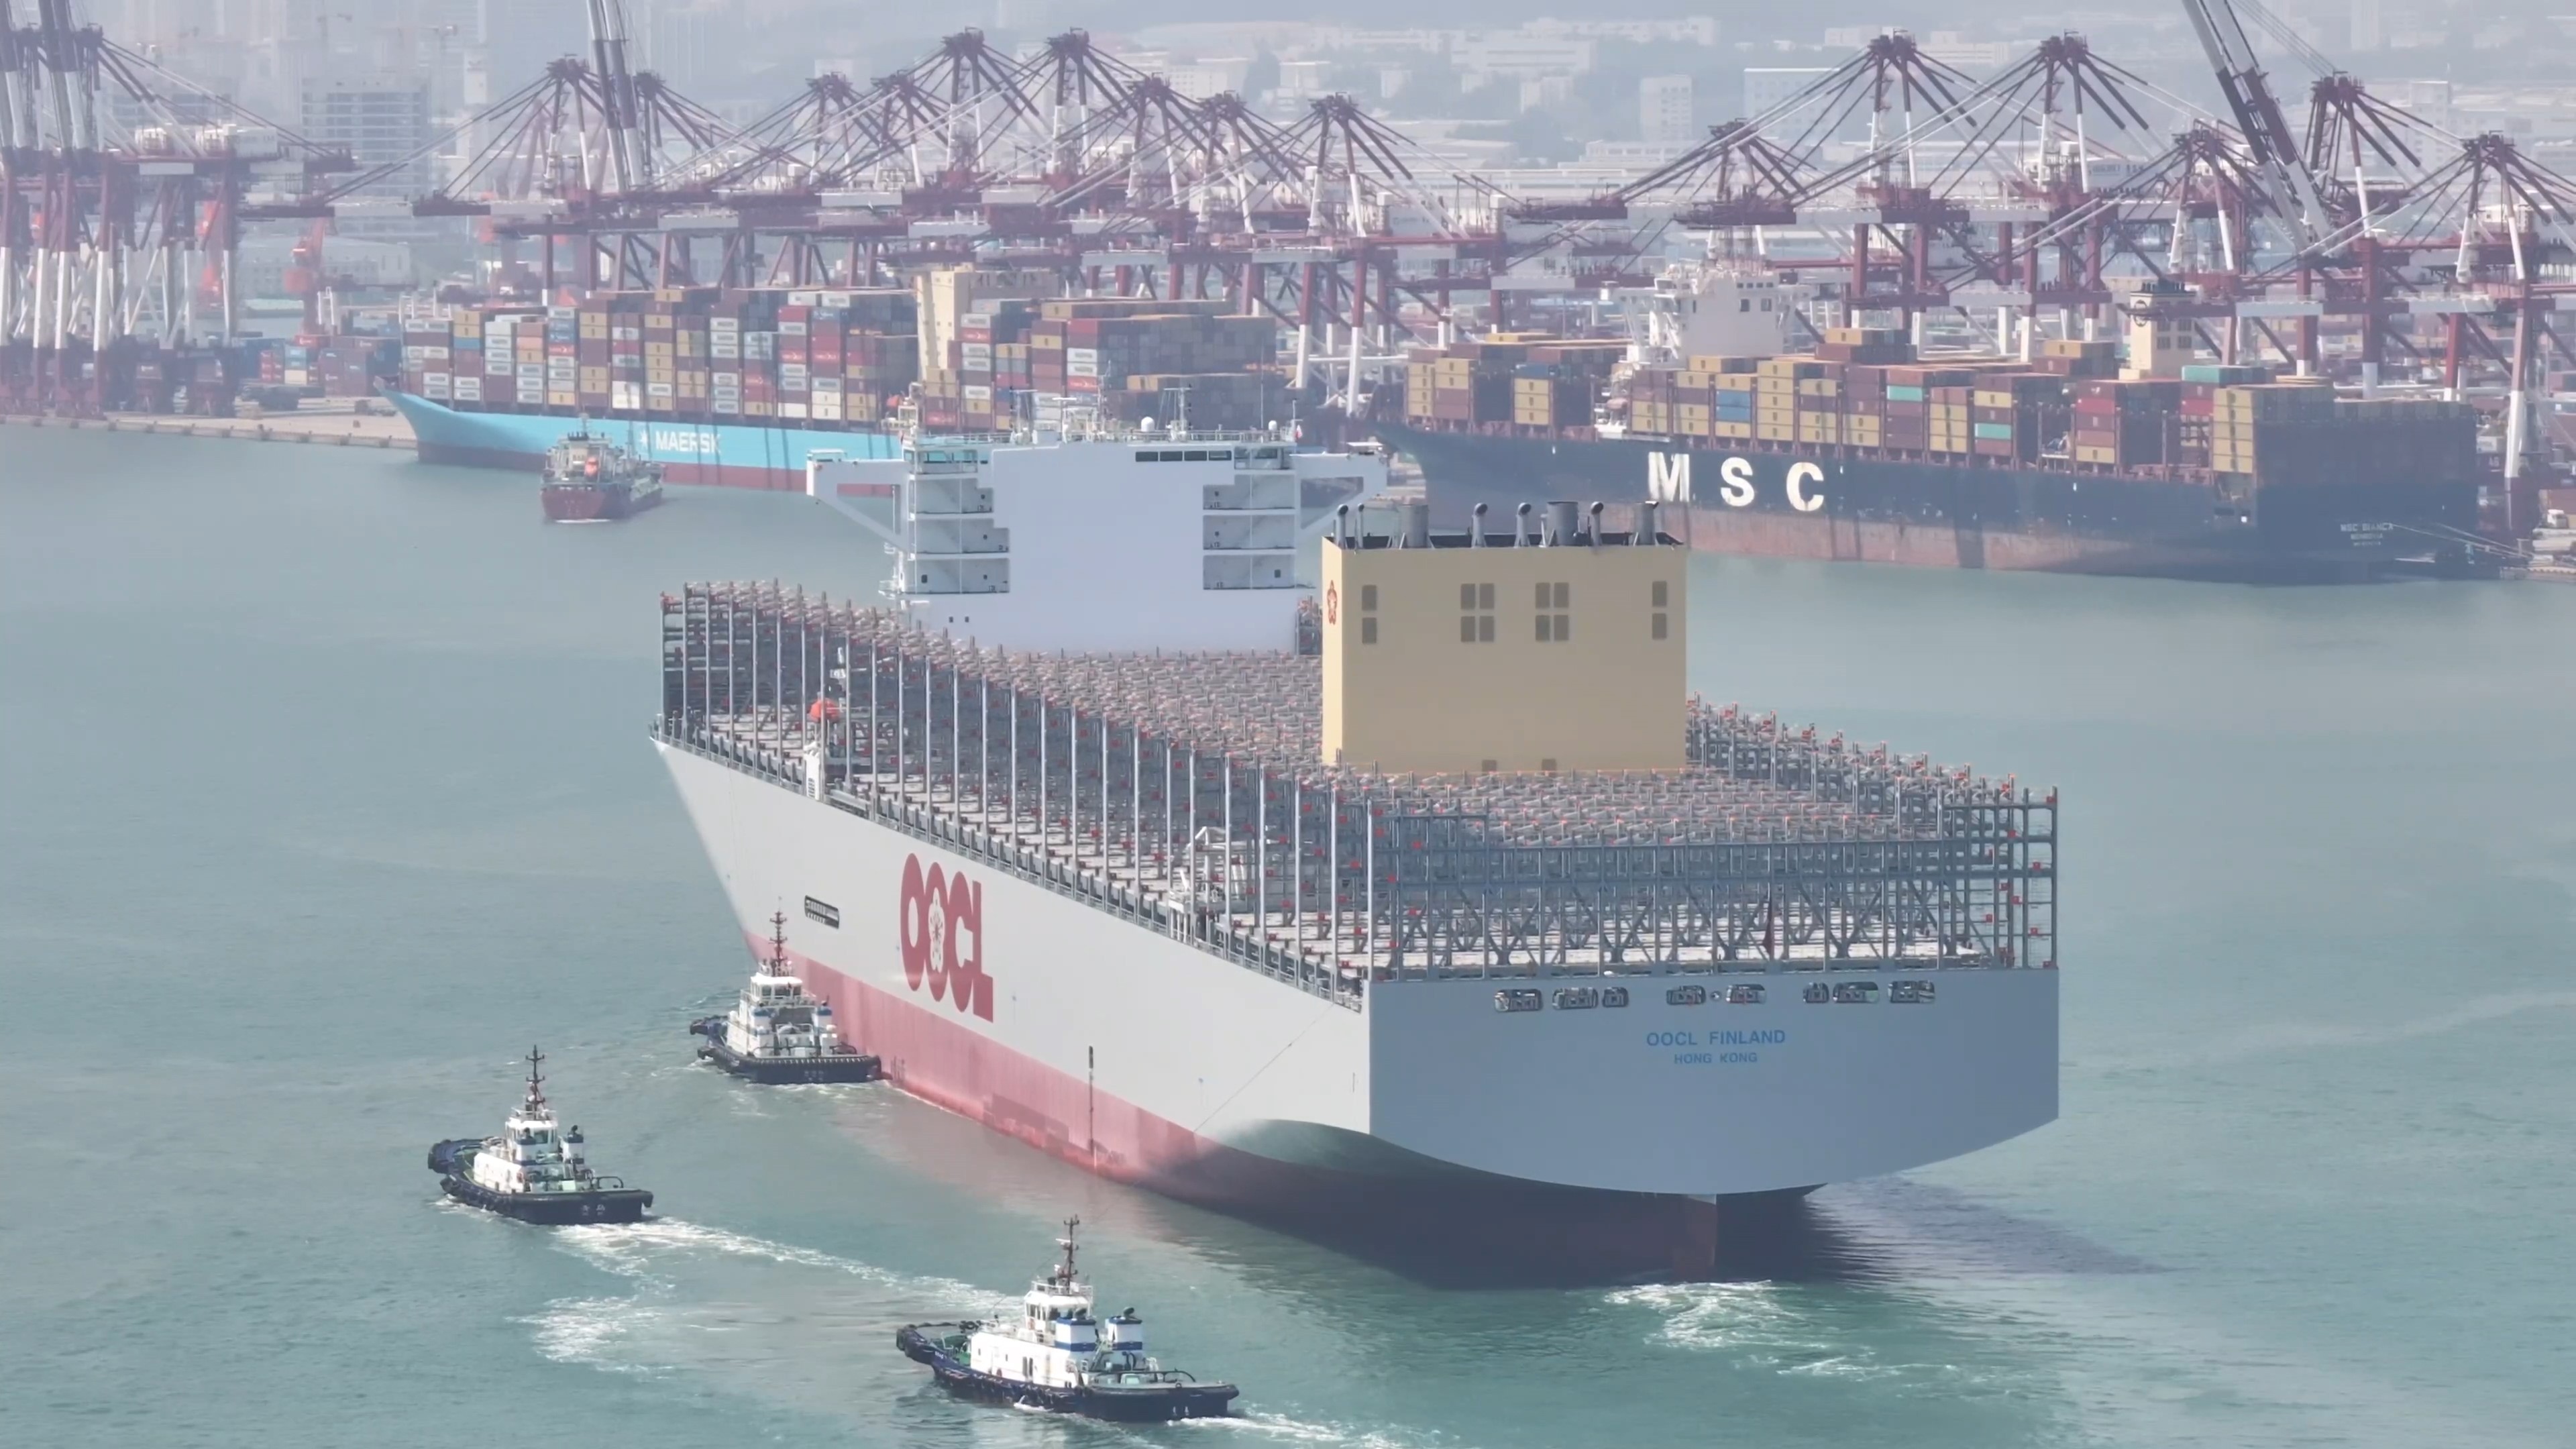 山东港口青岛港366米以上大型集装箱船作业艘次同比提升21.20%